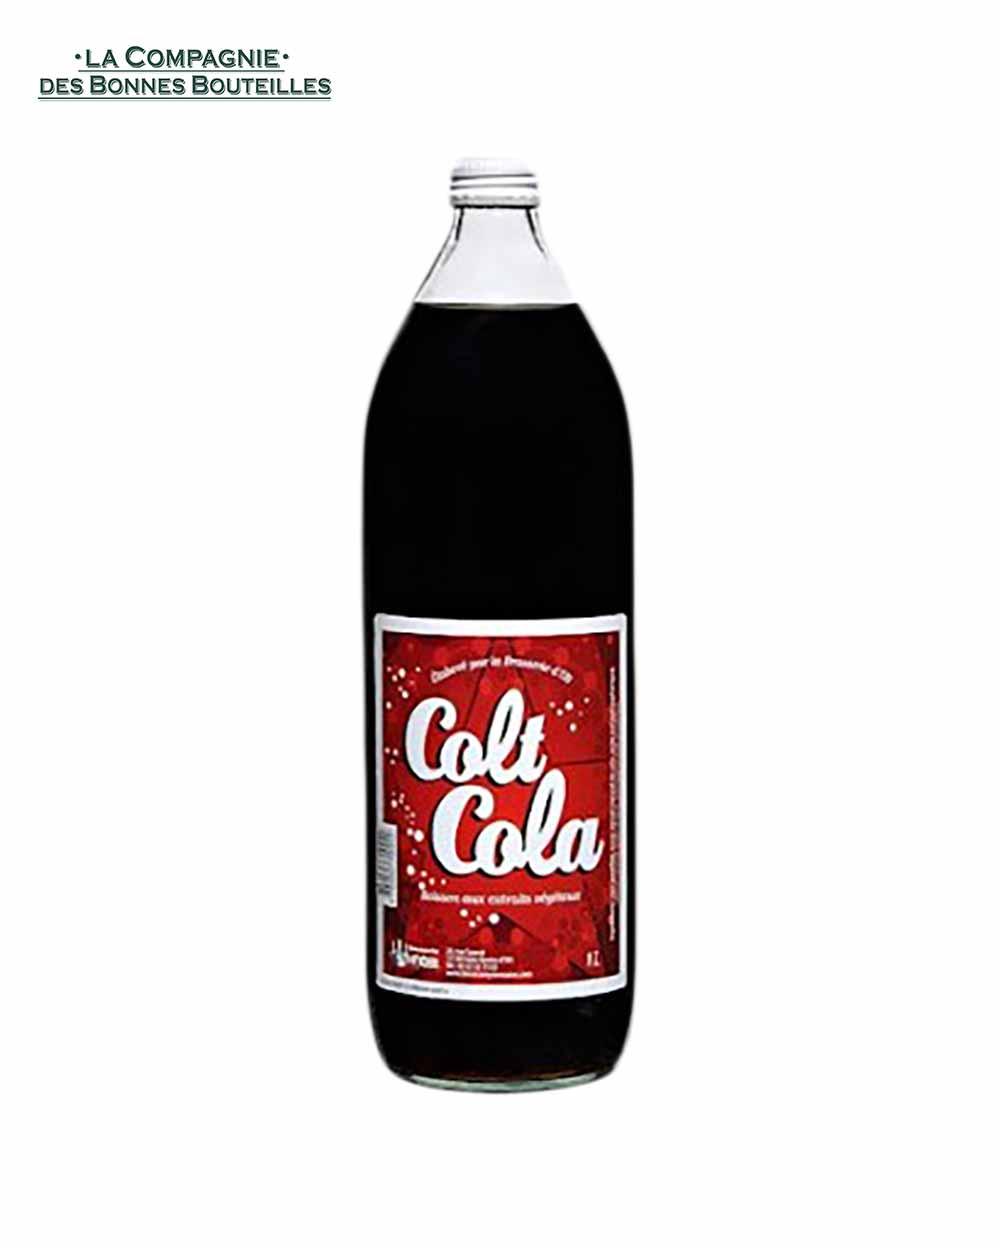 Colt Cola - Brasserie d'Olt -  100 cl